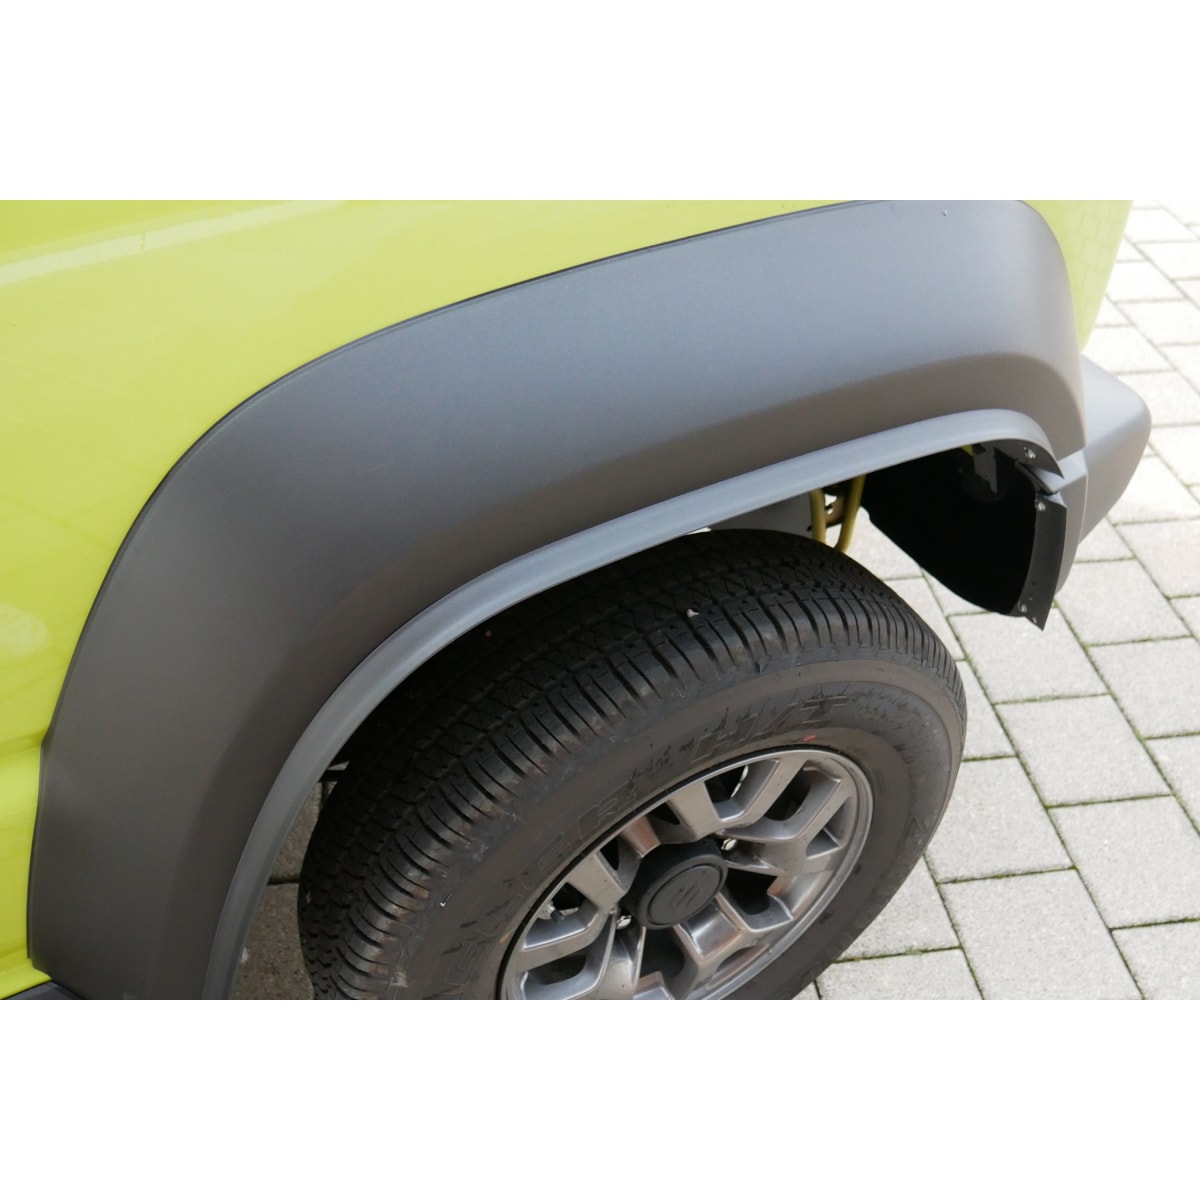 Kotflügelverbreiterungssatz für Suzuki Jimny von TREKFINDER - Offroad